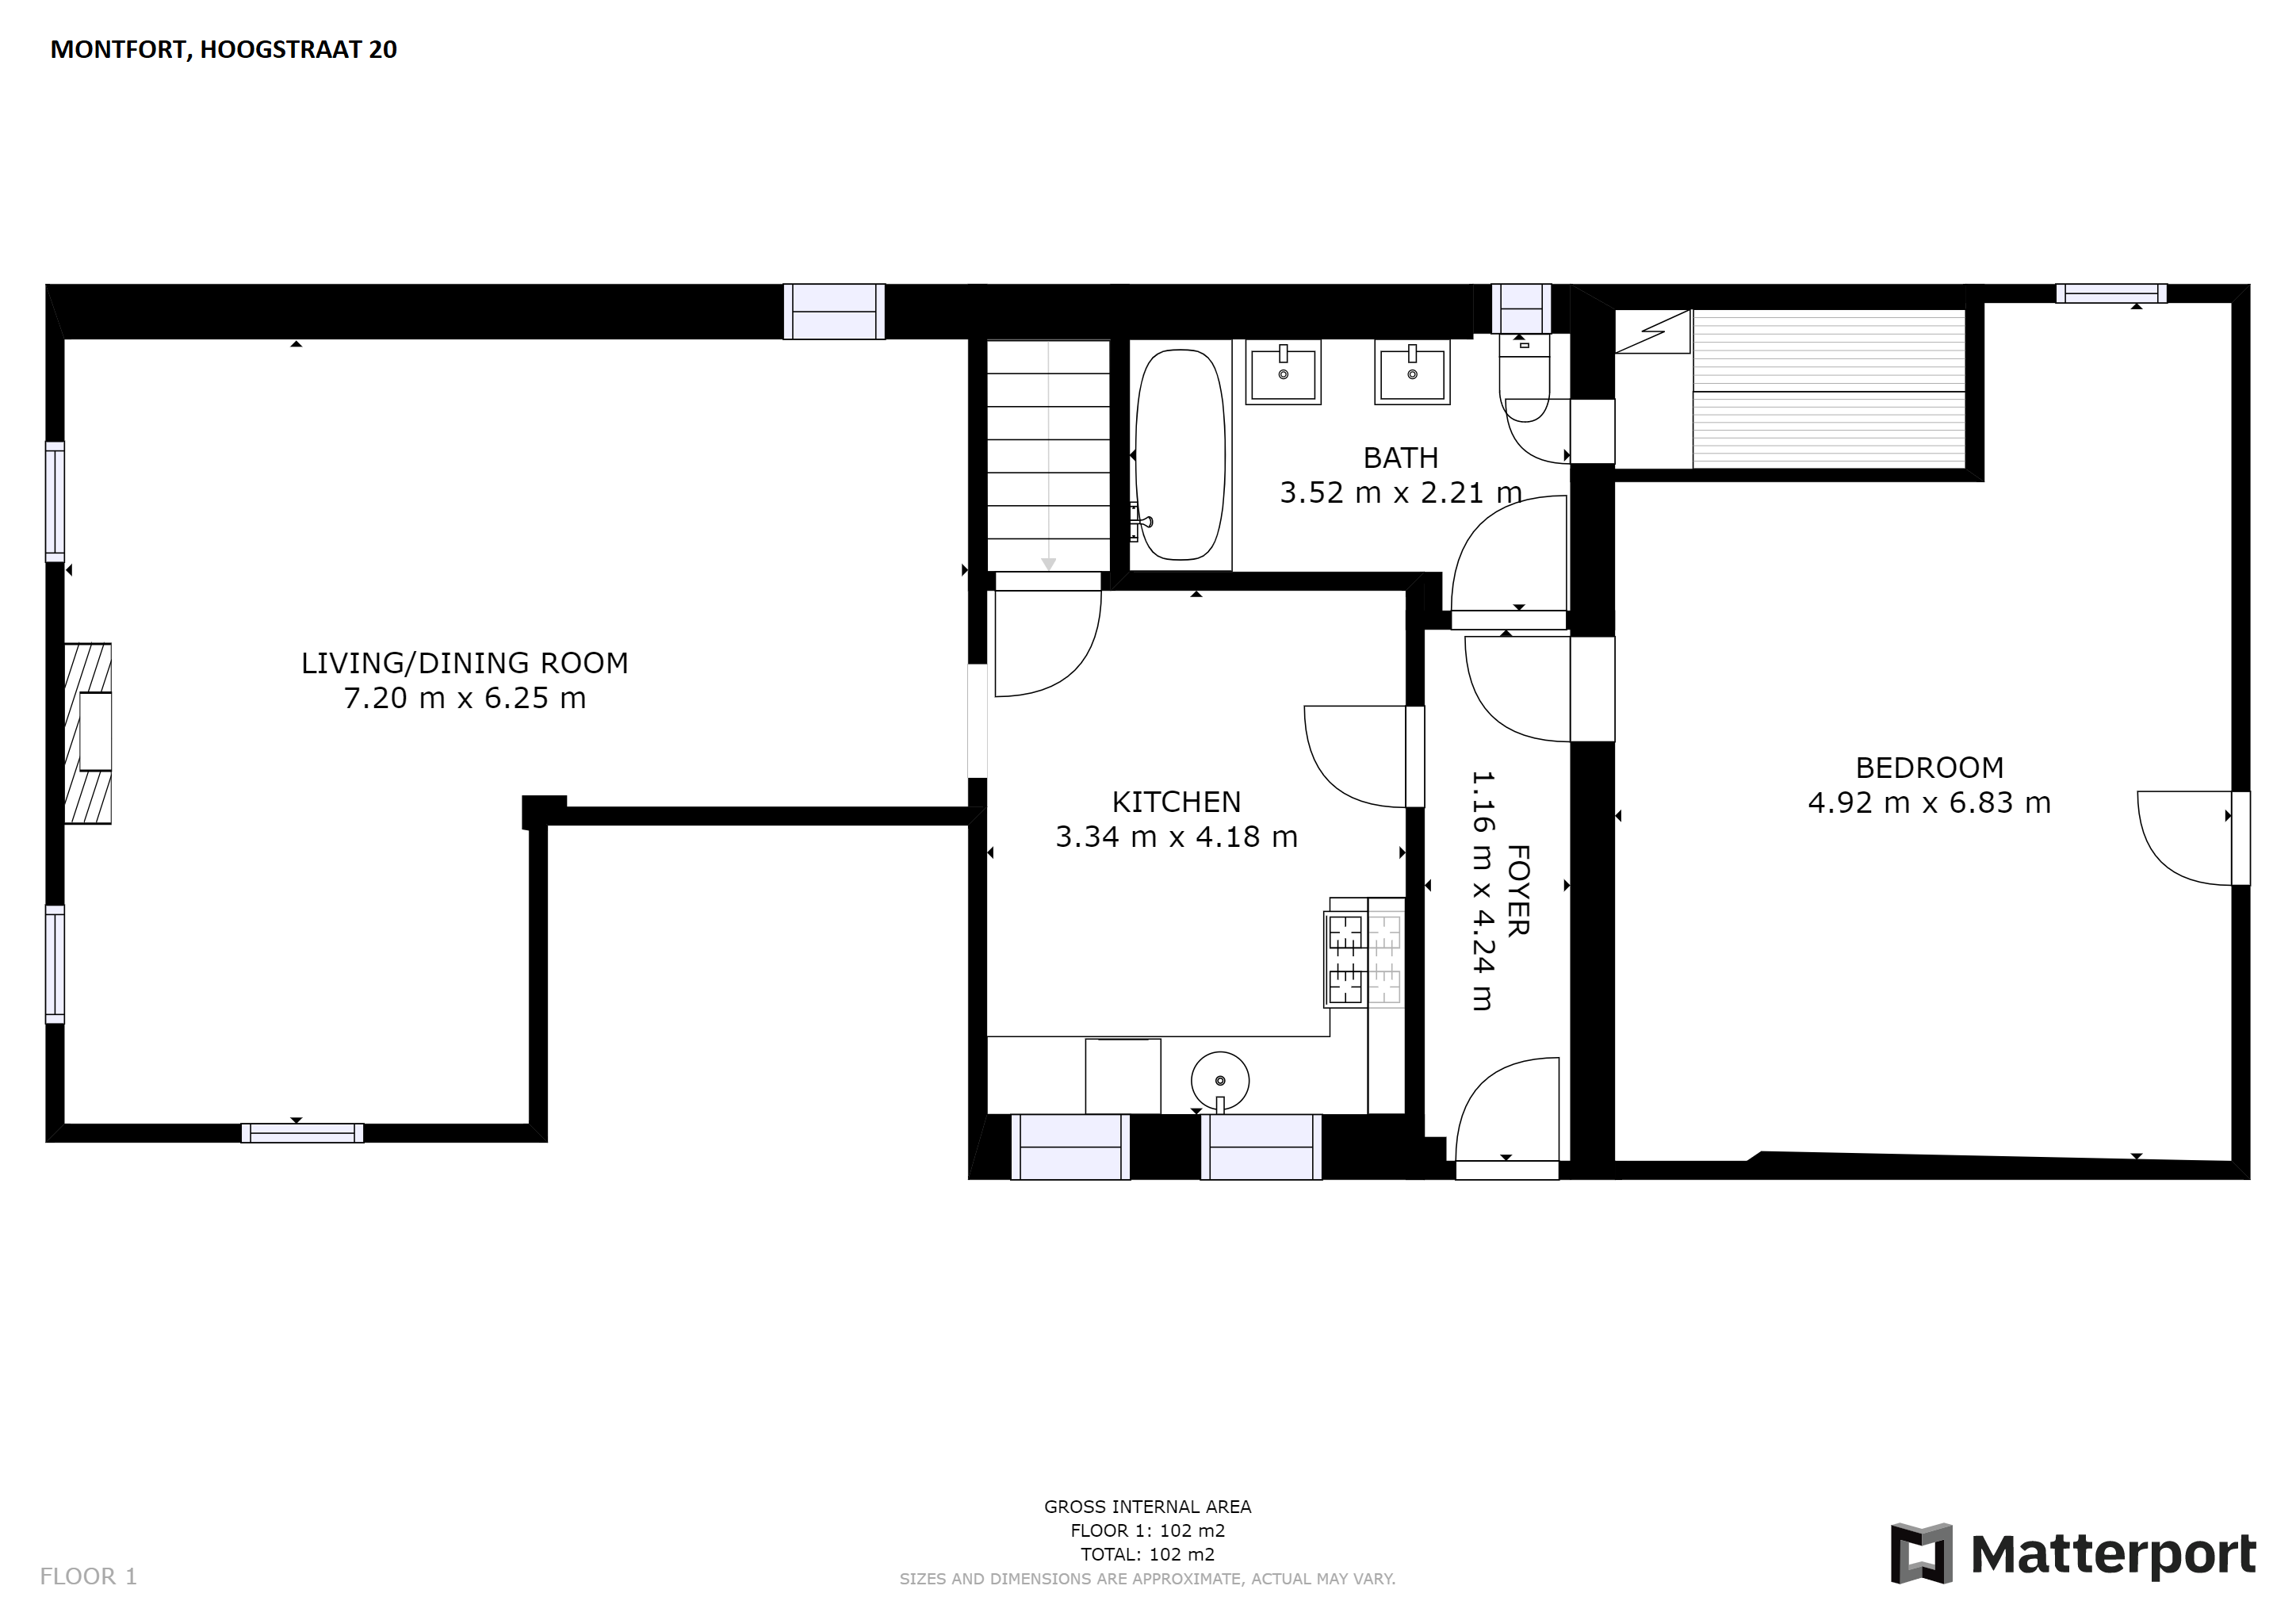 Woning / appartement - Montfort - Hoogstraat 18 A,18 B,20,20 A,20 B